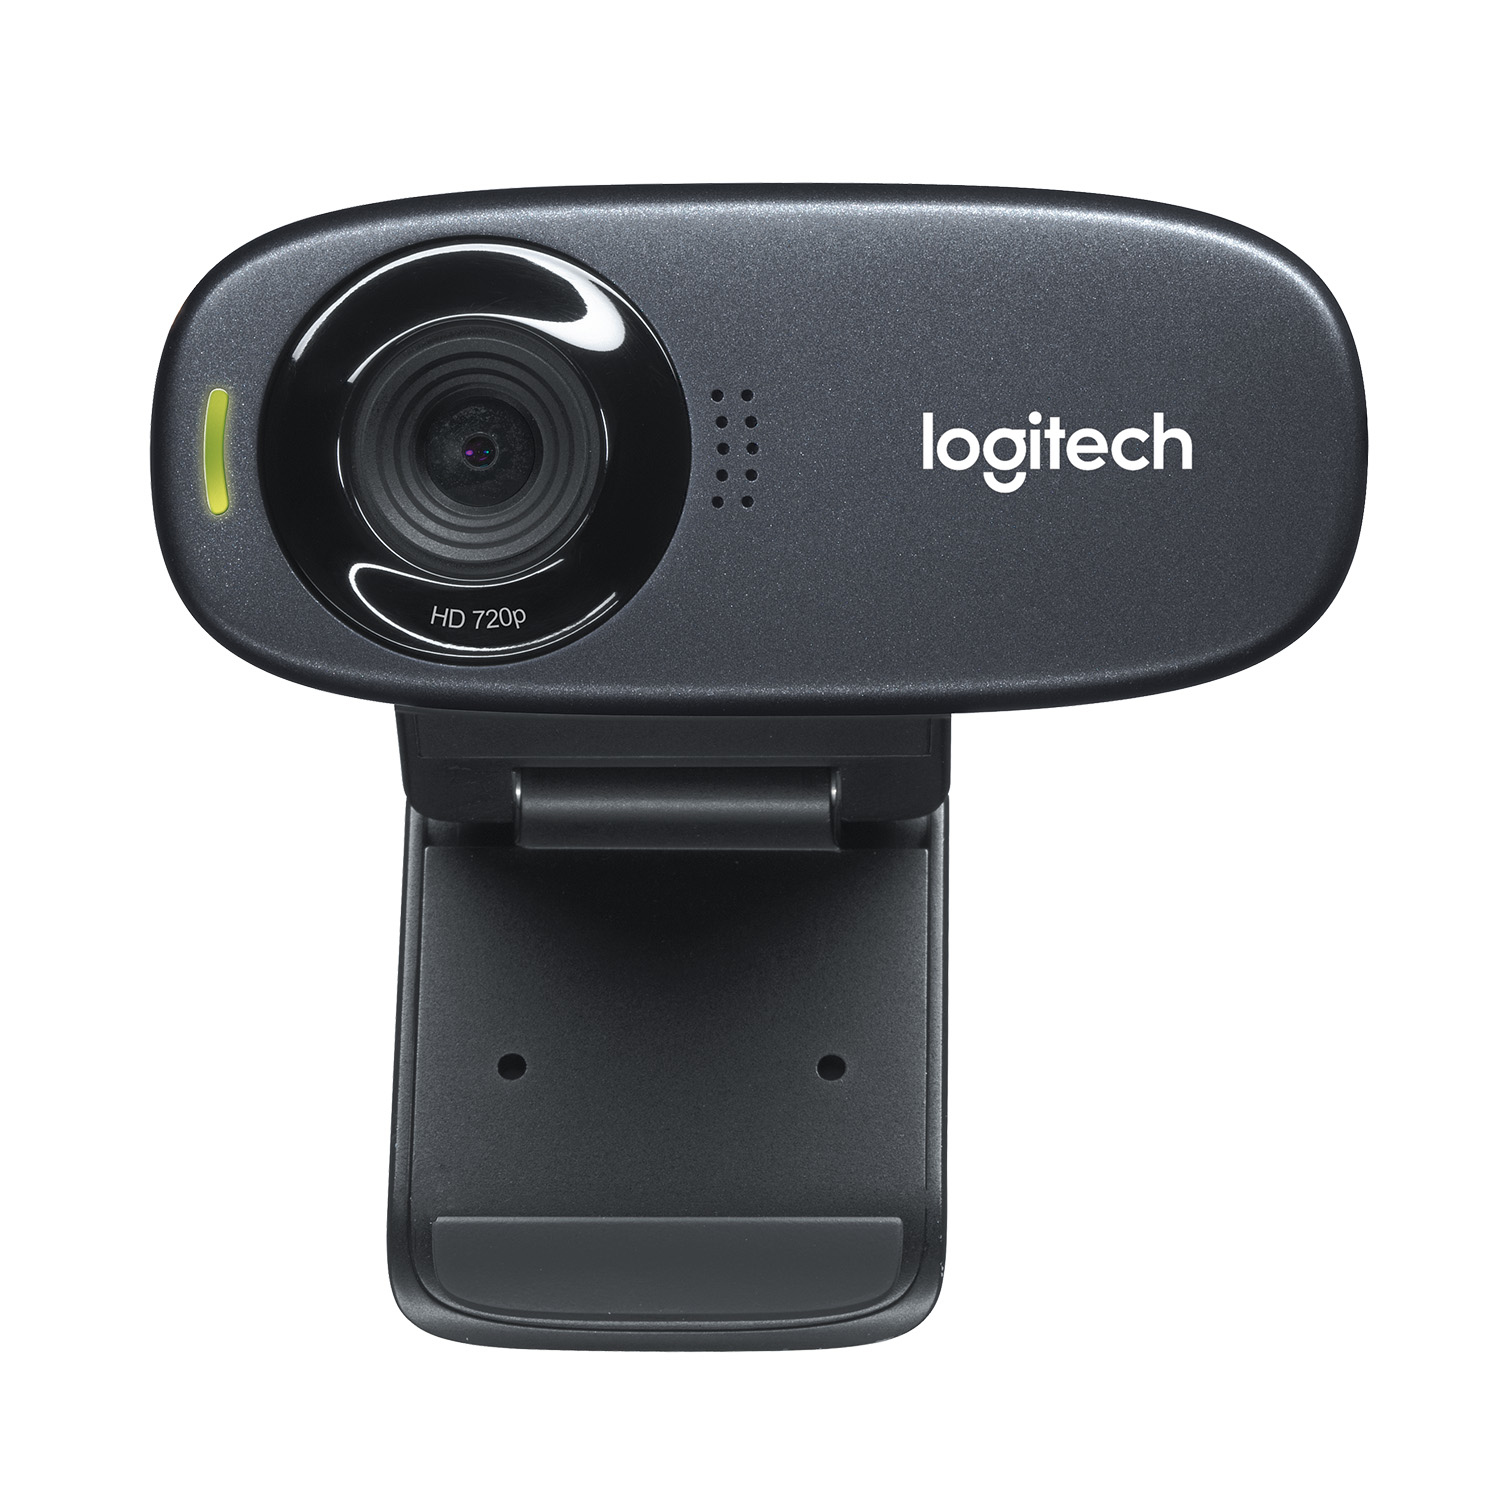 Logitech C310 HD WEBCAM cámara web 5 MP 1280 x 720 Pixeles USB Negro